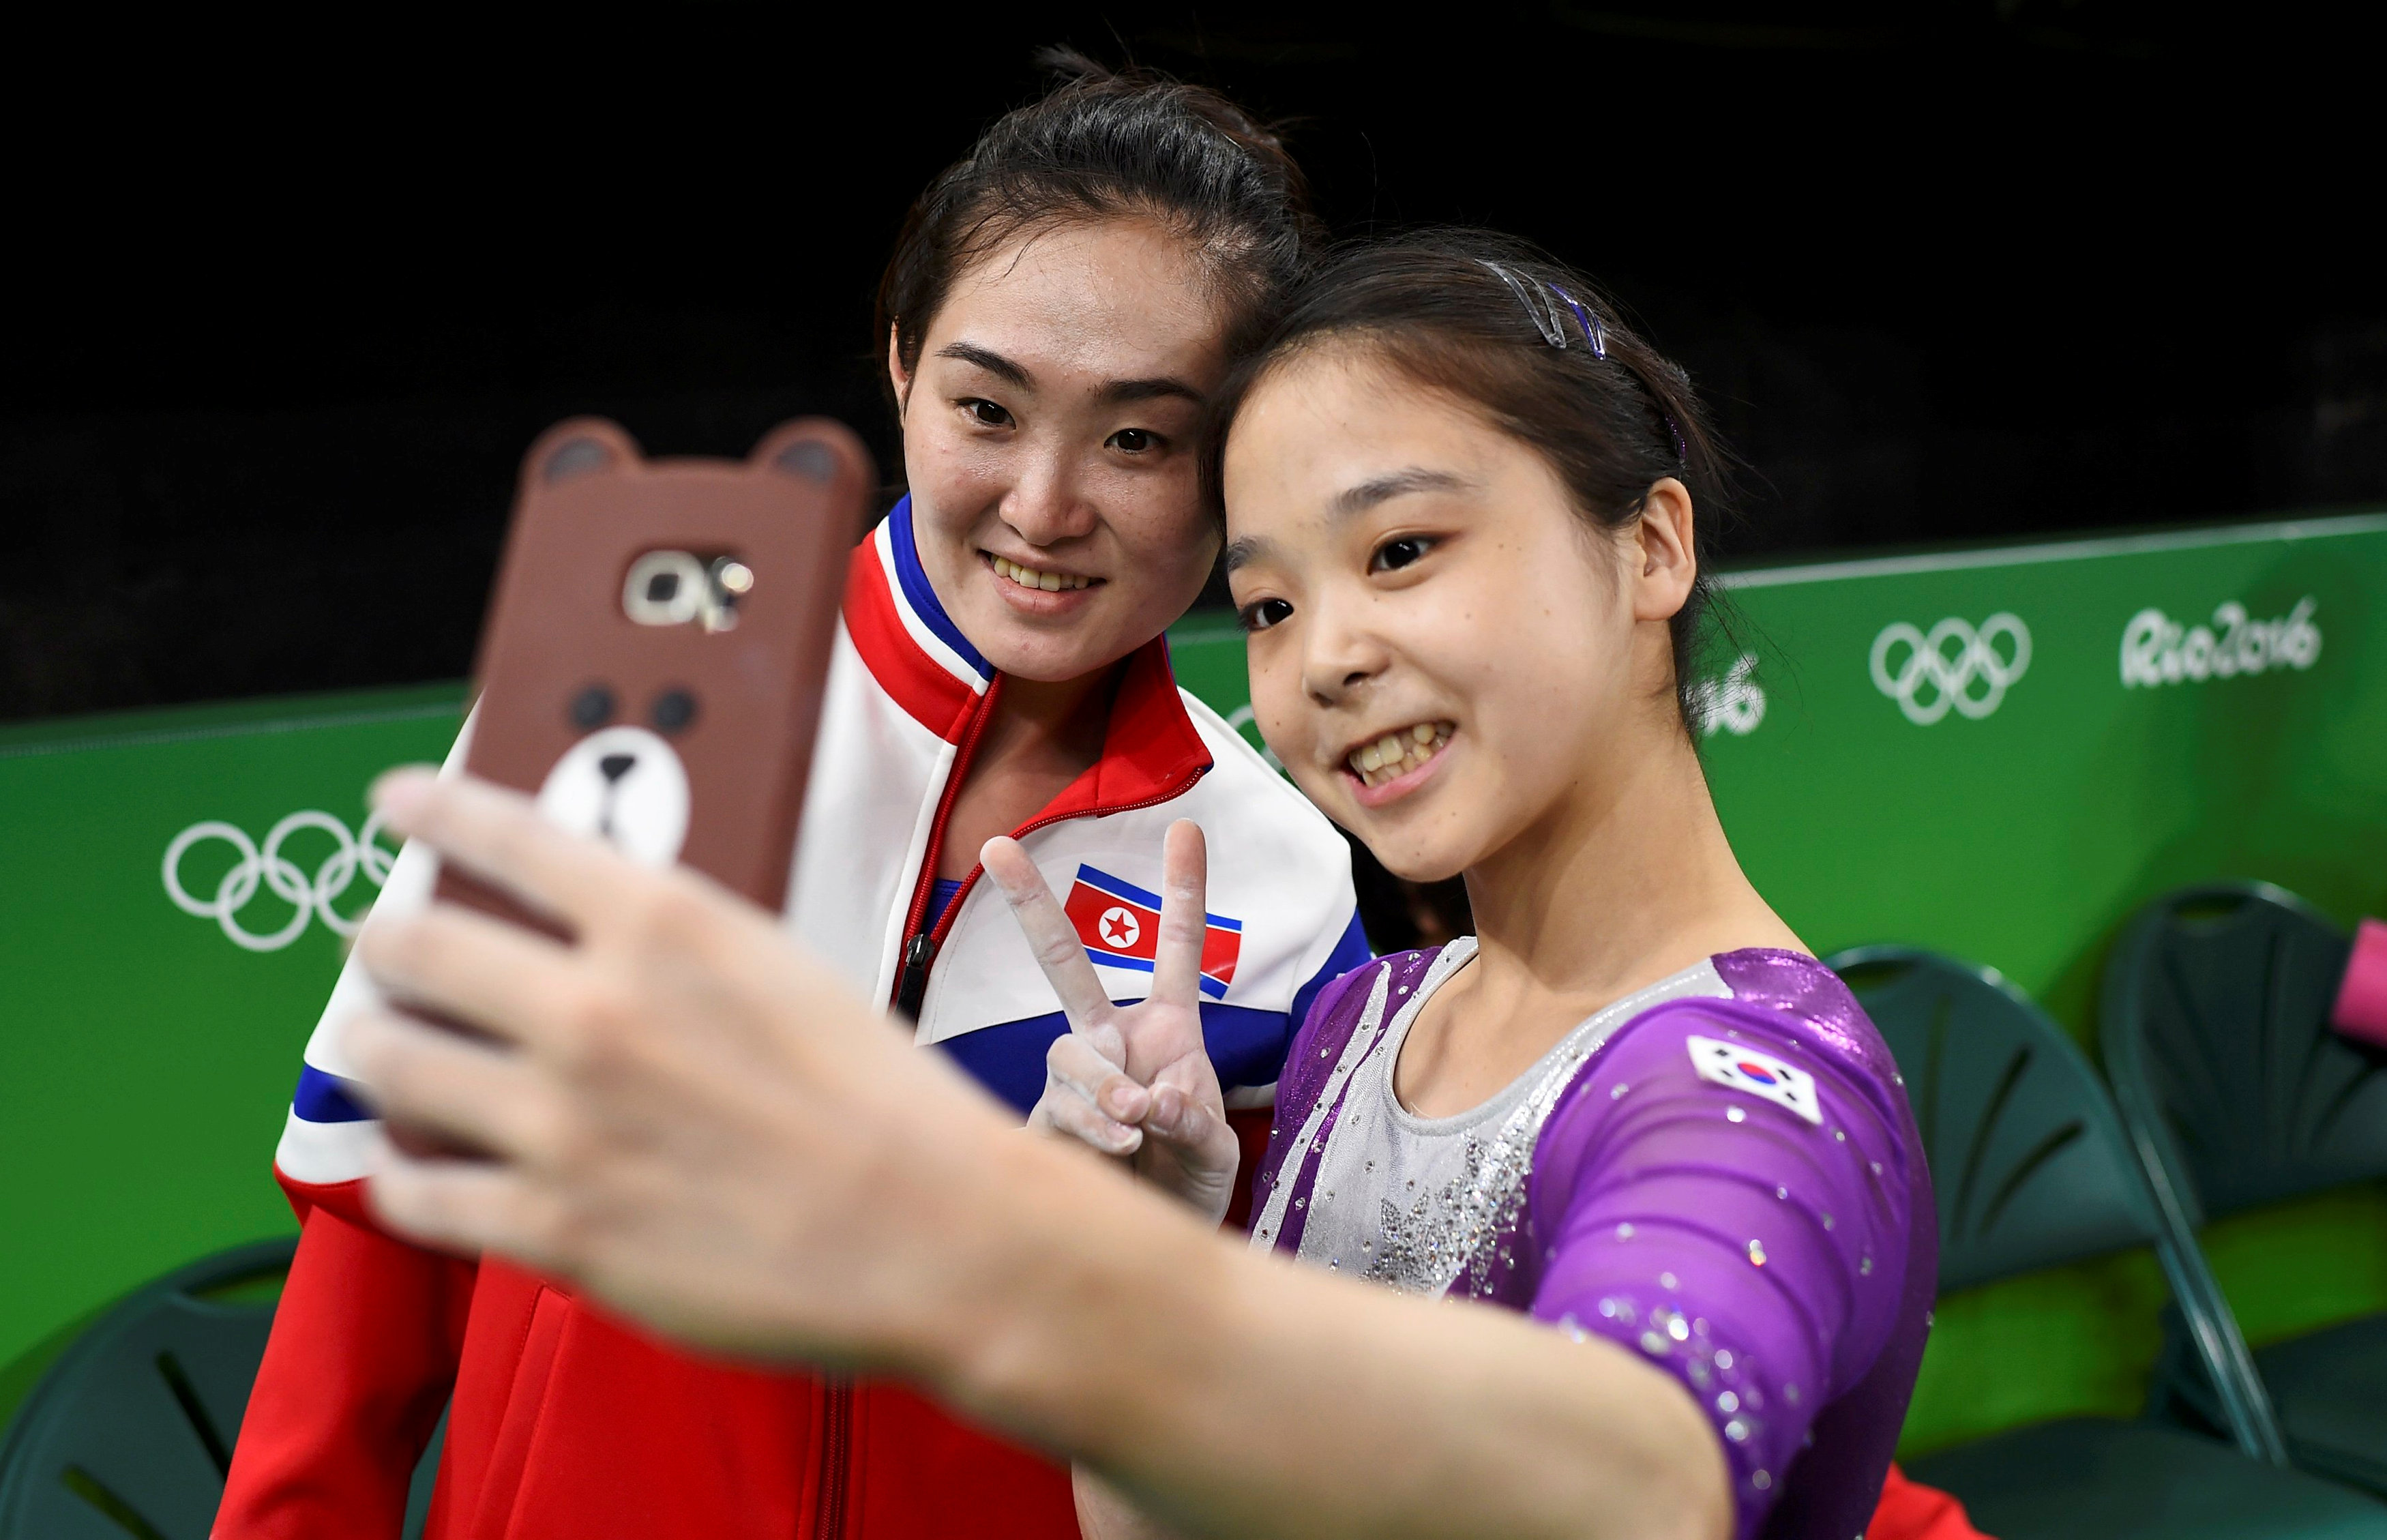 Οι γυμνάστριες της Βορείου και της Νοτίου Κορέας μαζί σε selfie